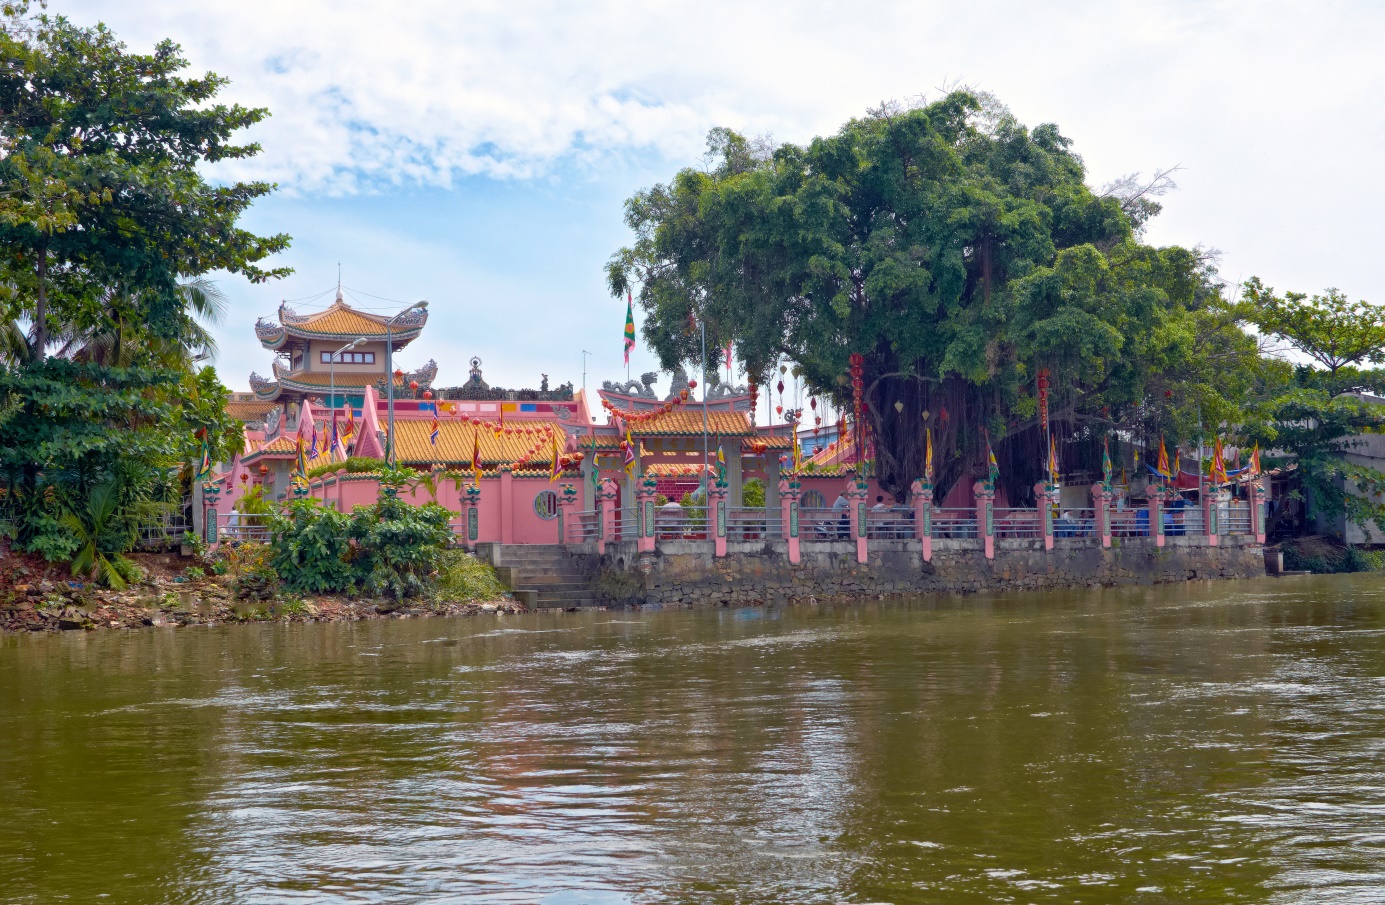 Định hướng phát triển du lịch tại Cù Lao Phố